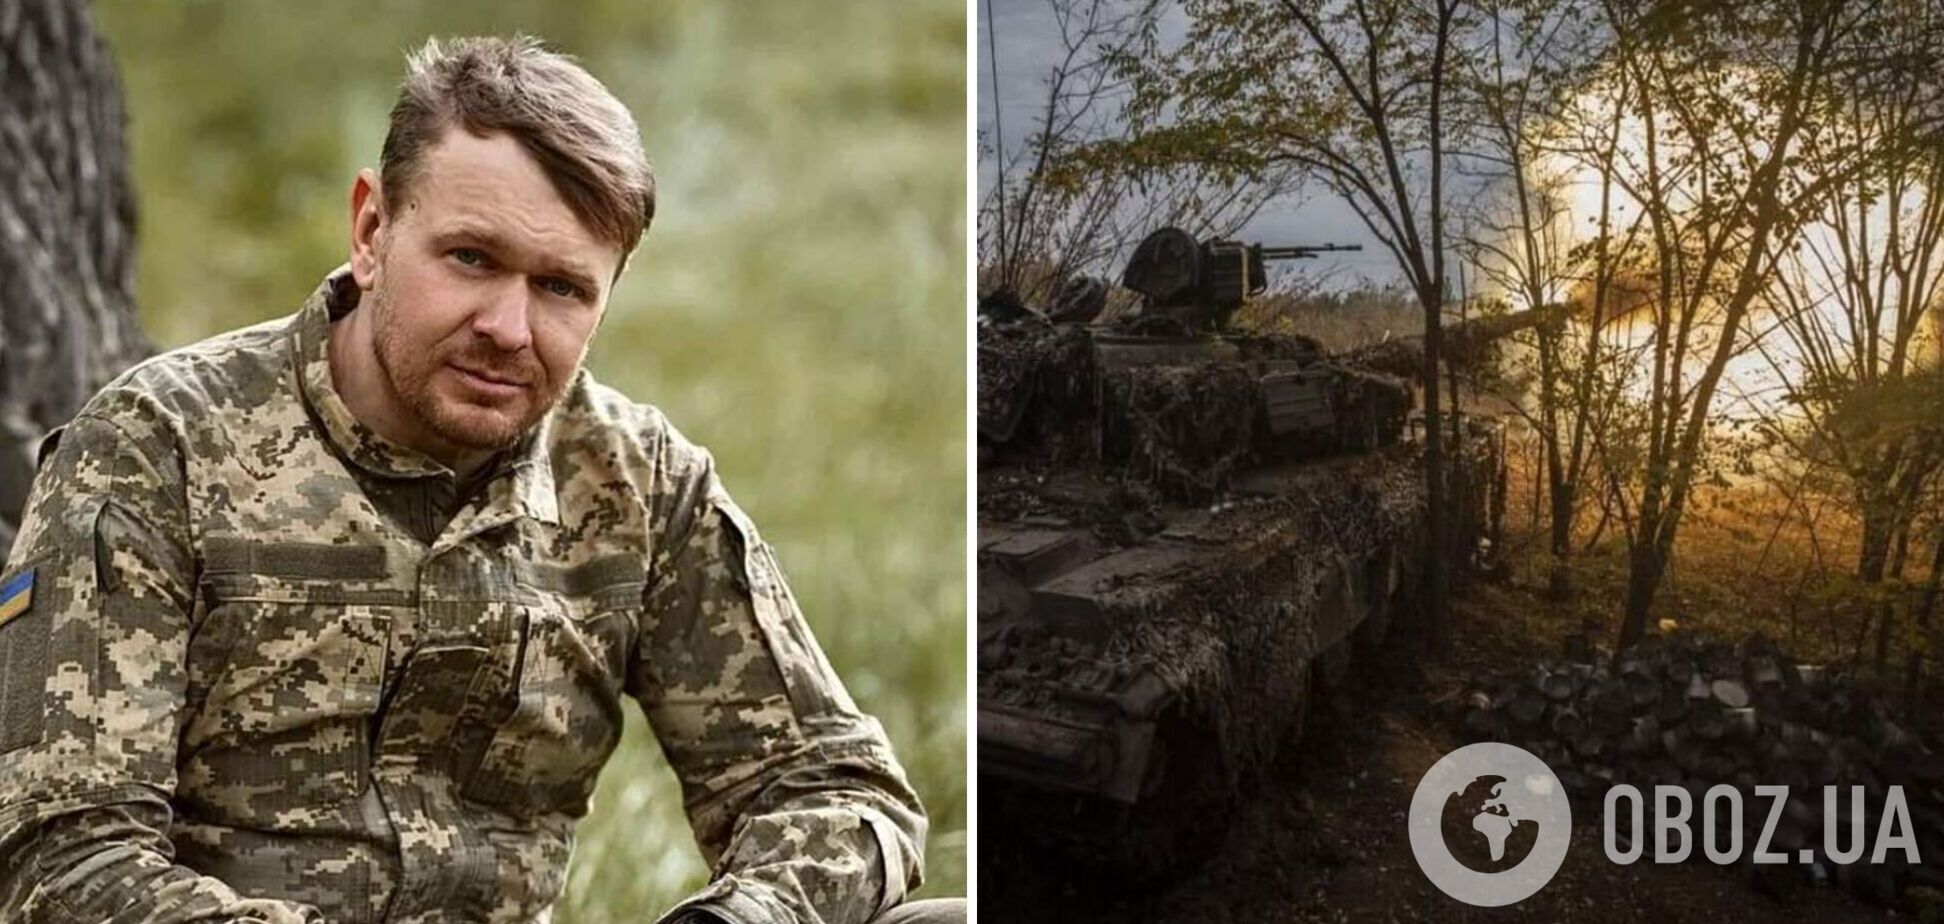 Сашко Положинский пожаловался на проблемы со здоровьем, которые приобрел в армии: нет шансов стать офицером